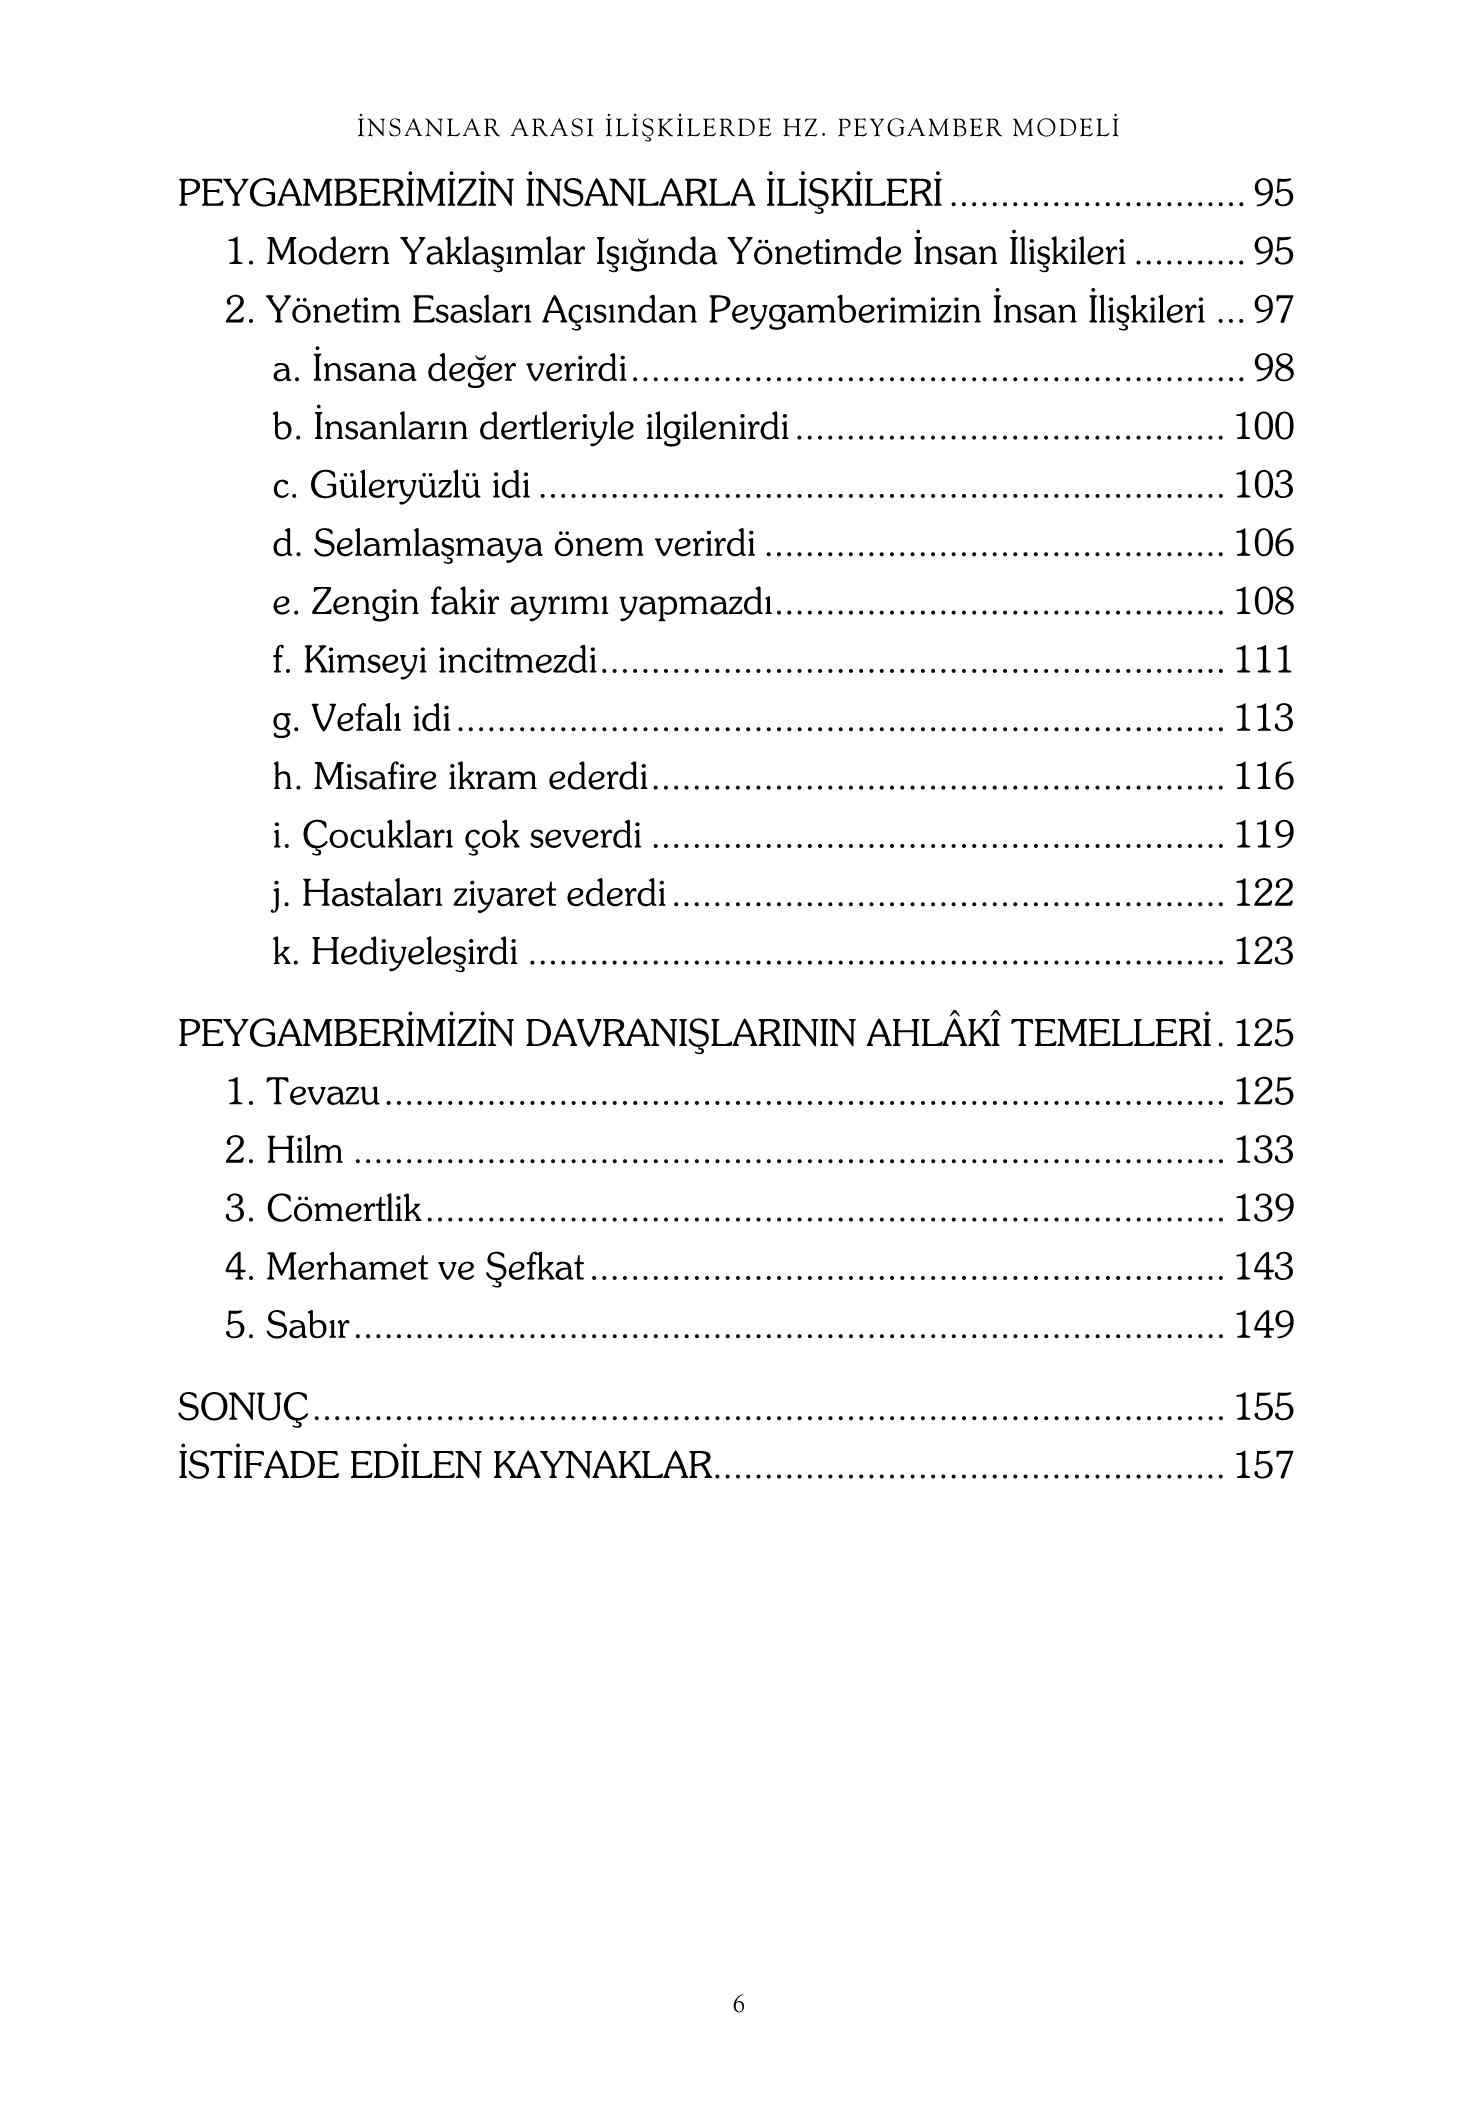 Huseyin Yusuf - Hz Peygamber Modeli - Insanlar arasi Iliskilerde - RehberYayinlari.pdf, 165-Sayfa 